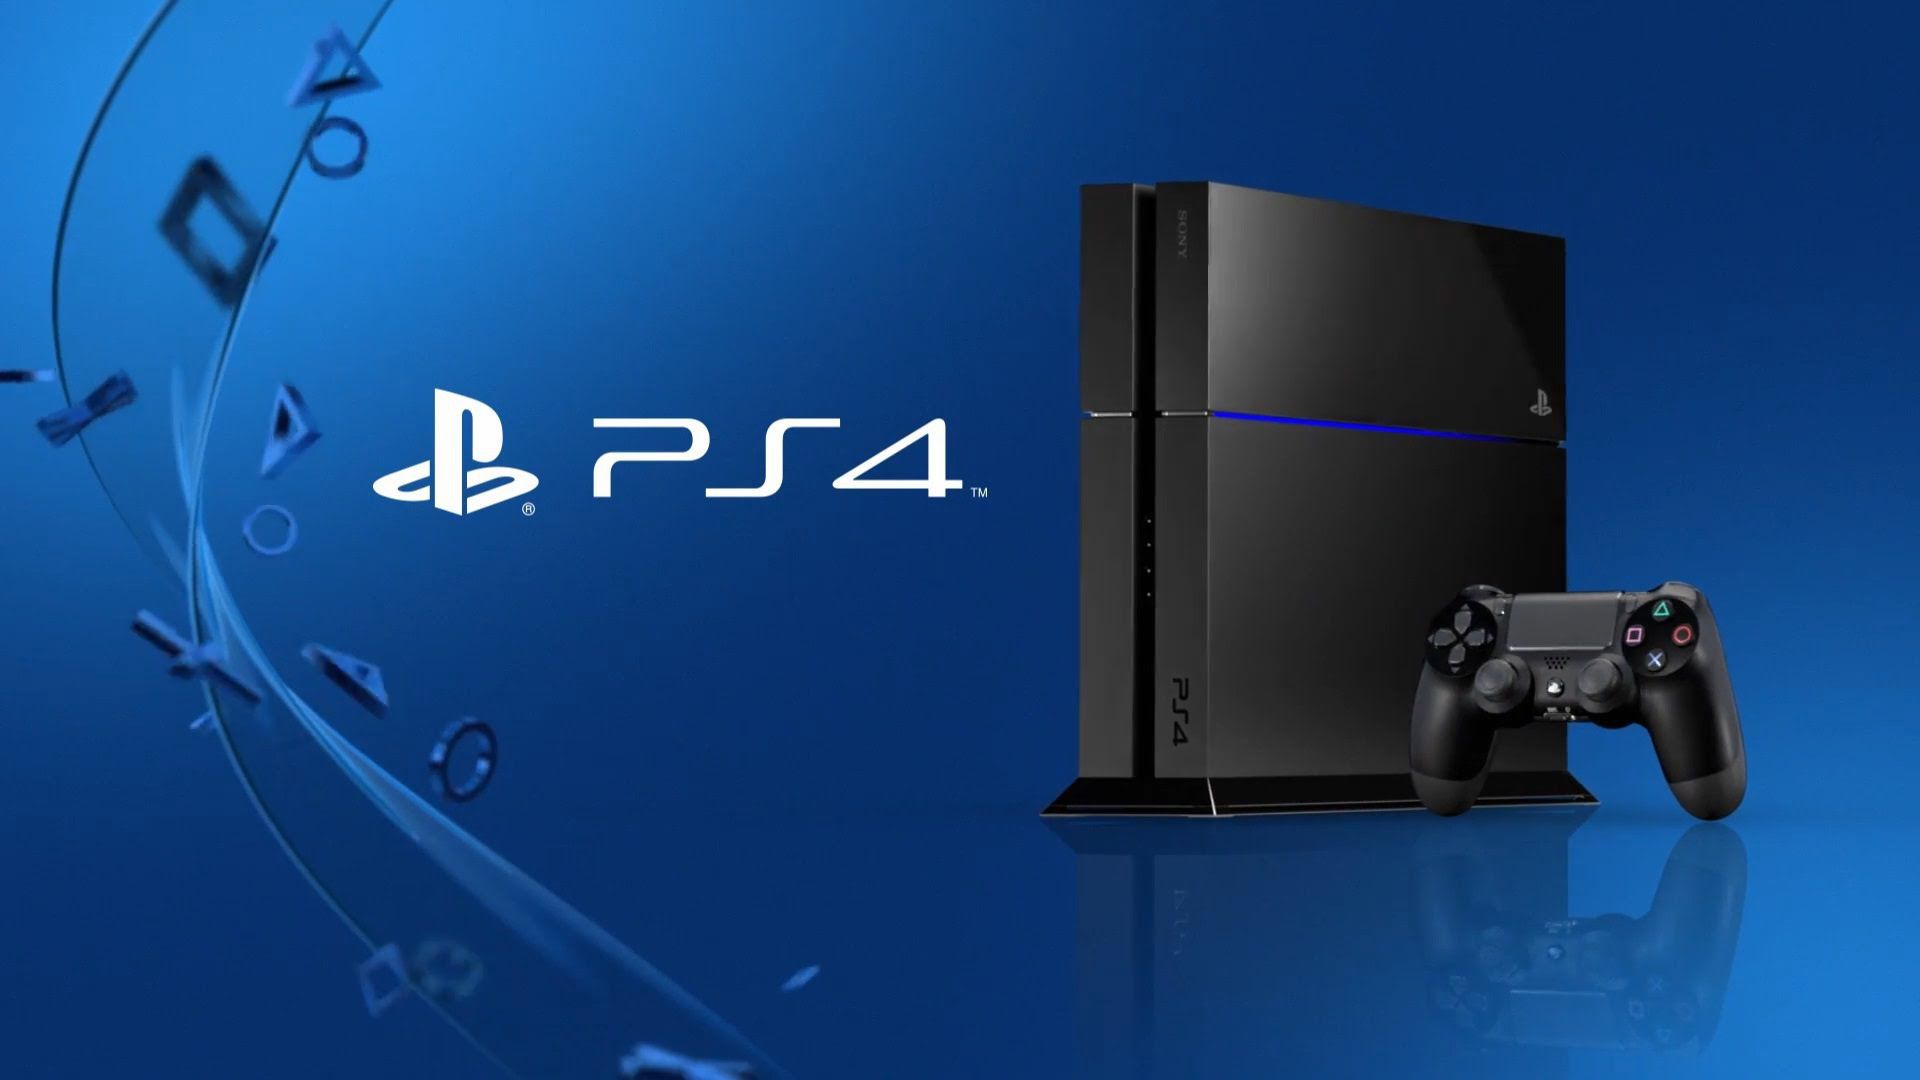 Sospensioni account PlayStation: l'enigma che preoccupa la Community Sony